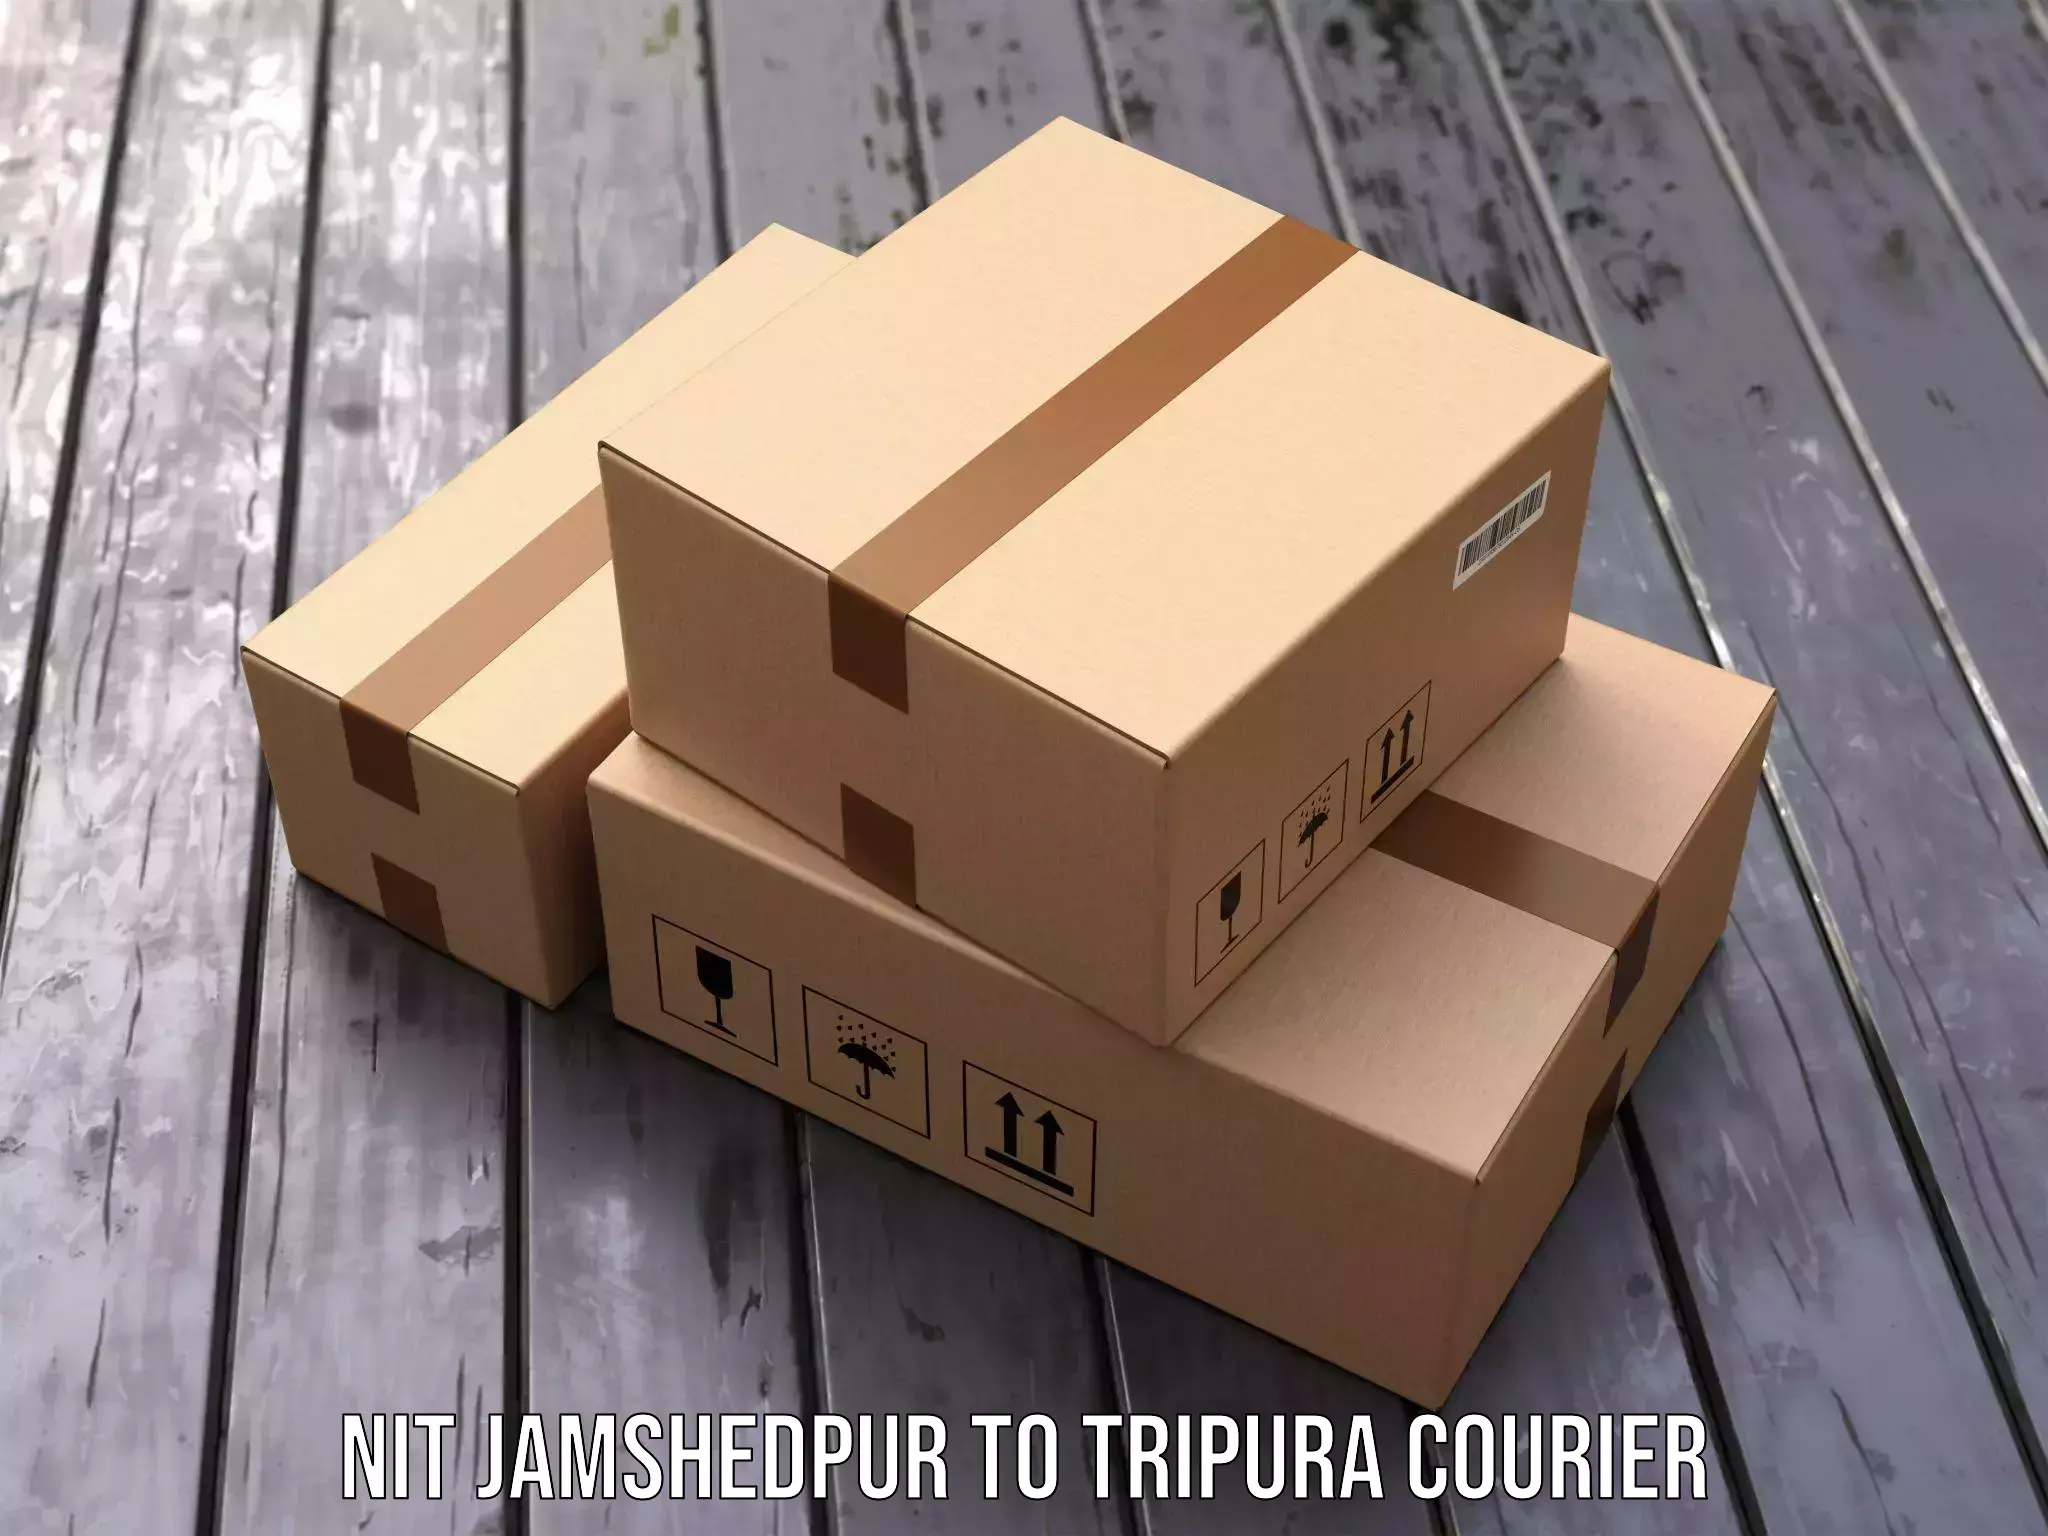 Flexible parcel services NIT Jamshedpur to Amarpur